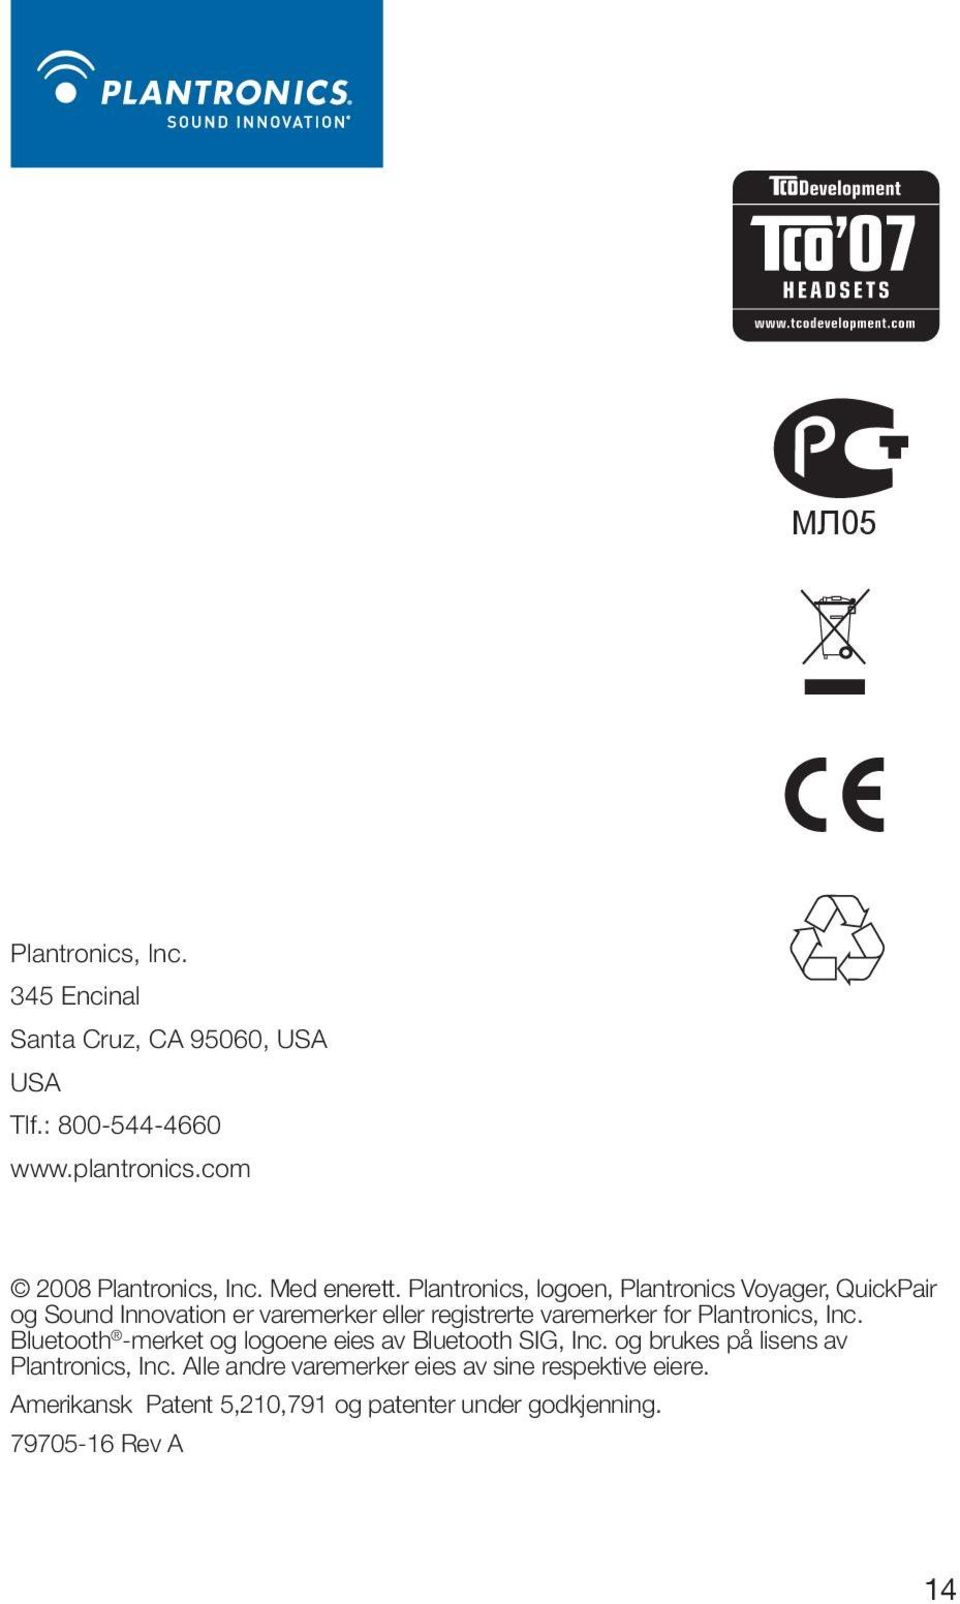 Plantronics, Inc. Bluetooth -merket og logoene eies av Bluetooth SIG, Inc. og brukes på lisens av Plantronics, Inc.